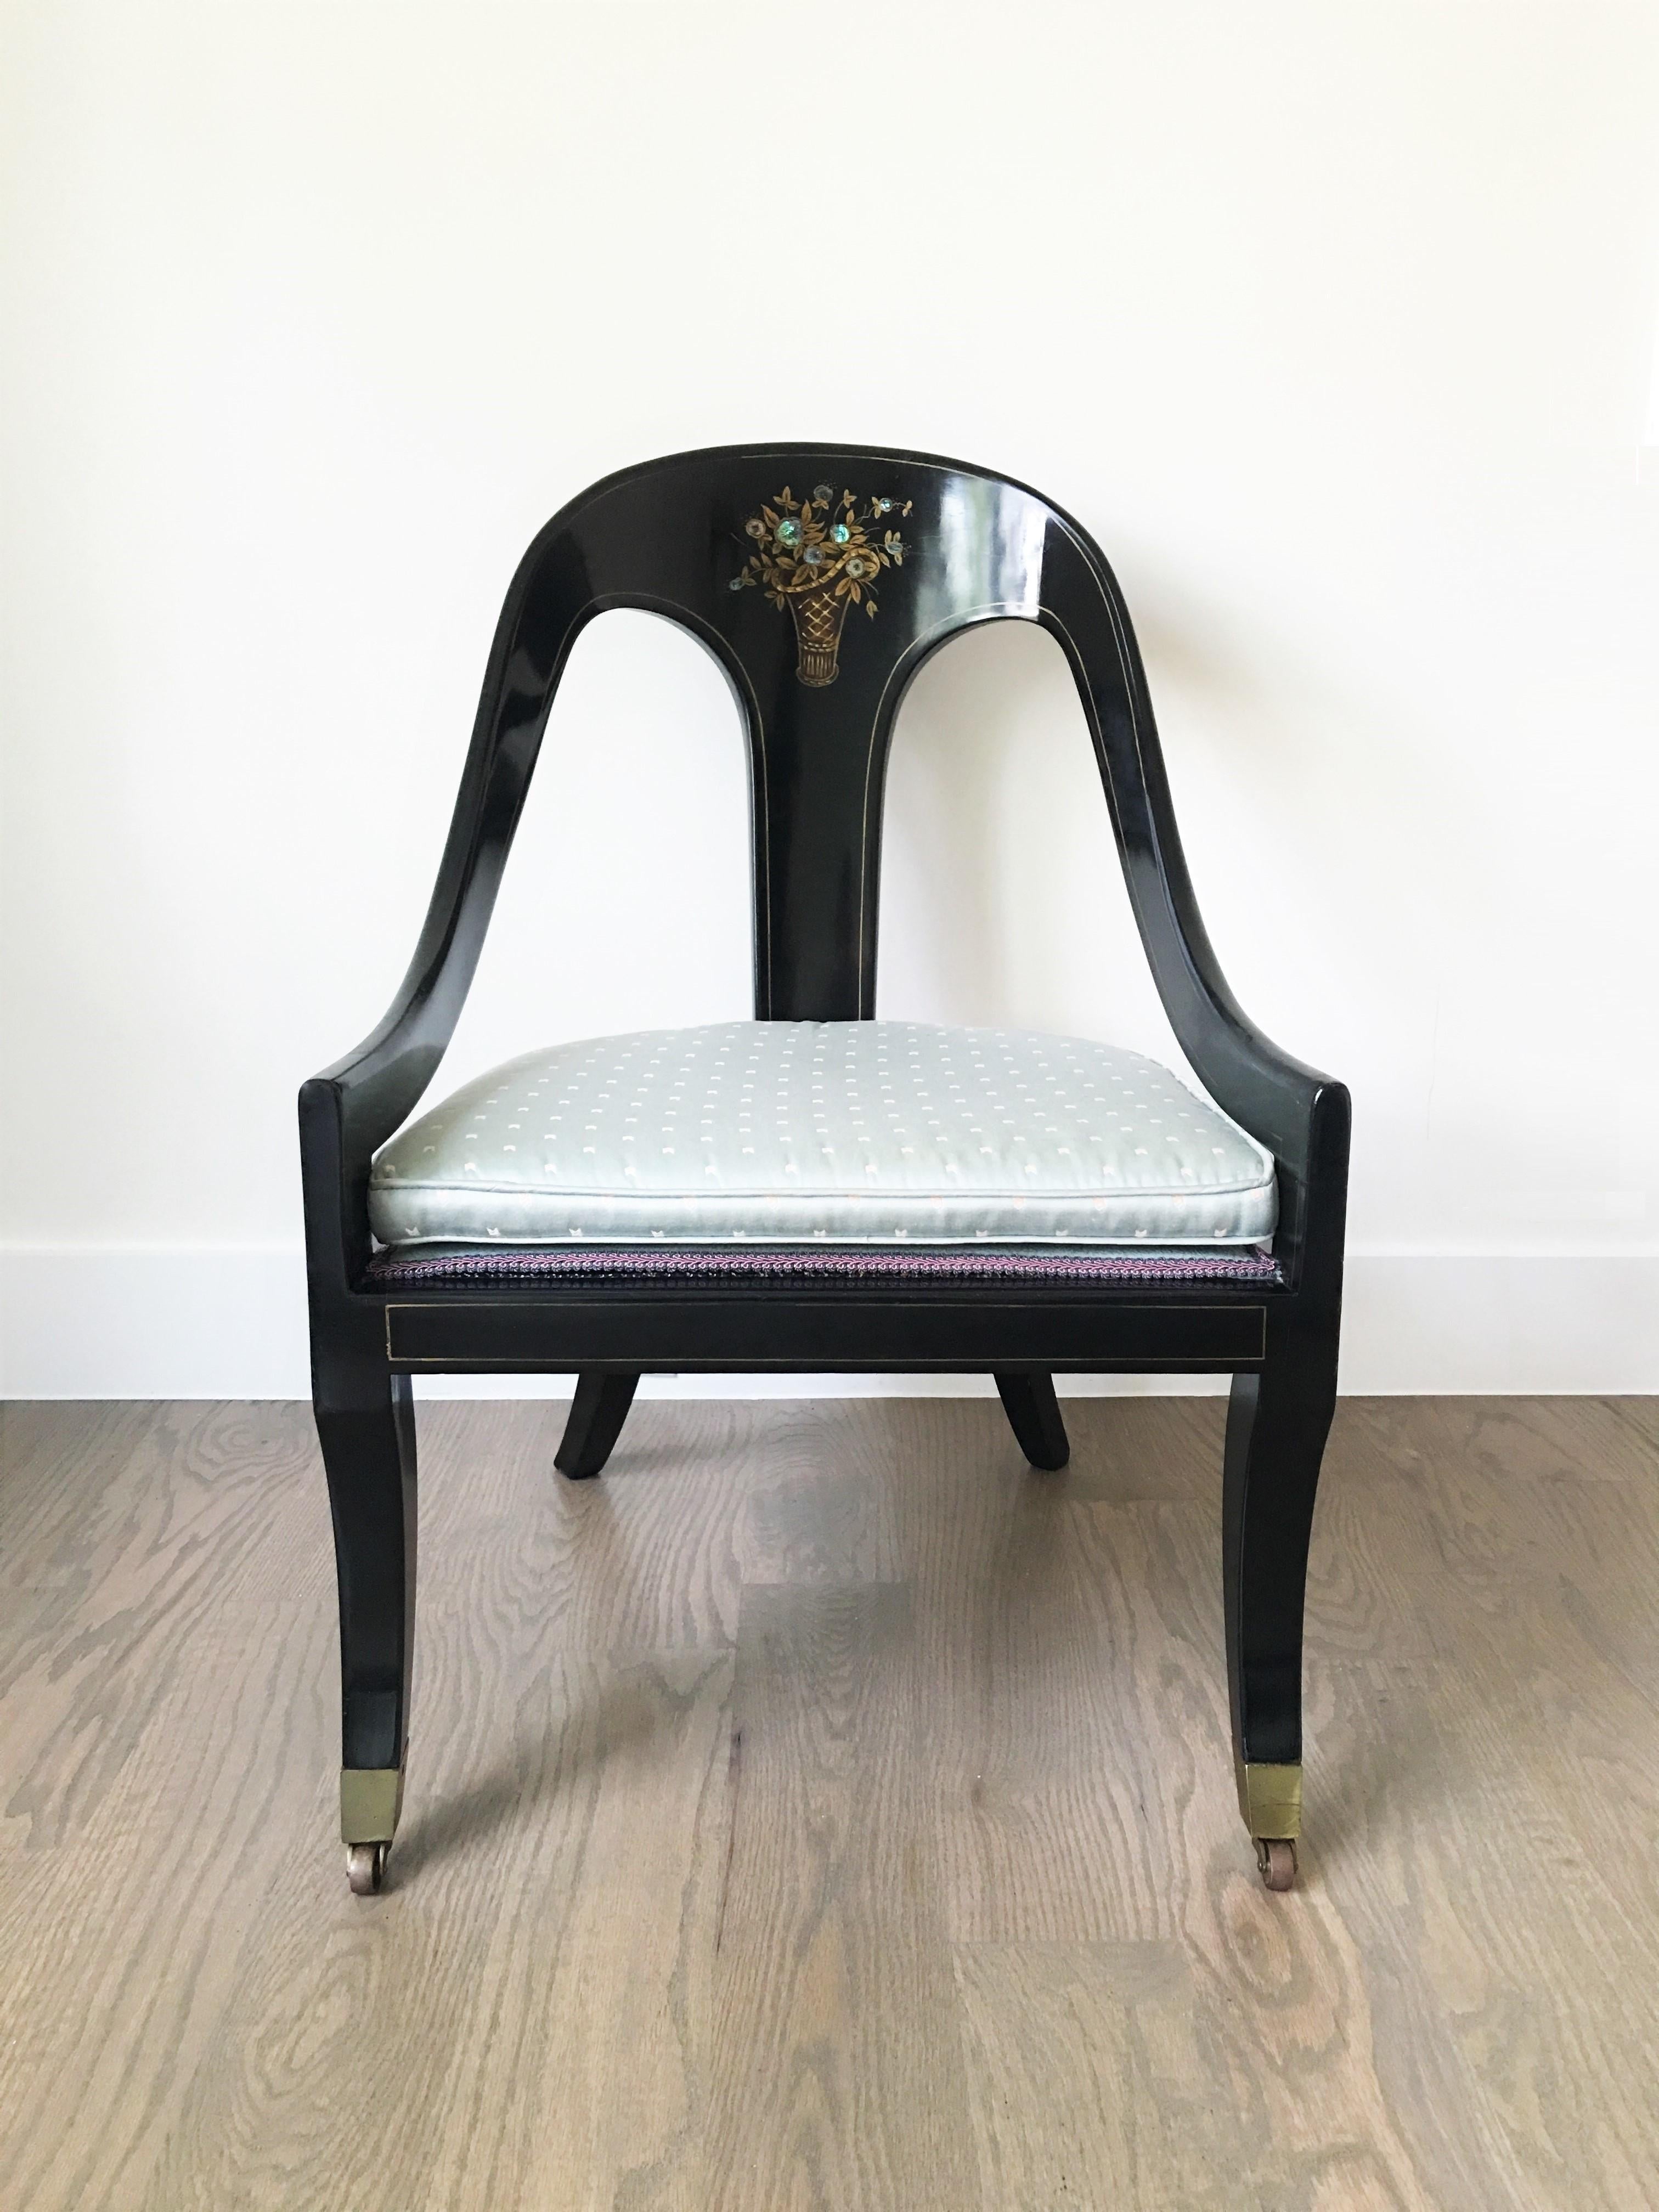 Paire de chaises à dossier en cuillère de style Régence. Les chaises ont un cadre laqué noir avec une crête arquée au-dessus d'un dosseret vertical avec un motif floral en incrustation de nacre, flanqué d'accoudoirs en pente descendante. Décorée à